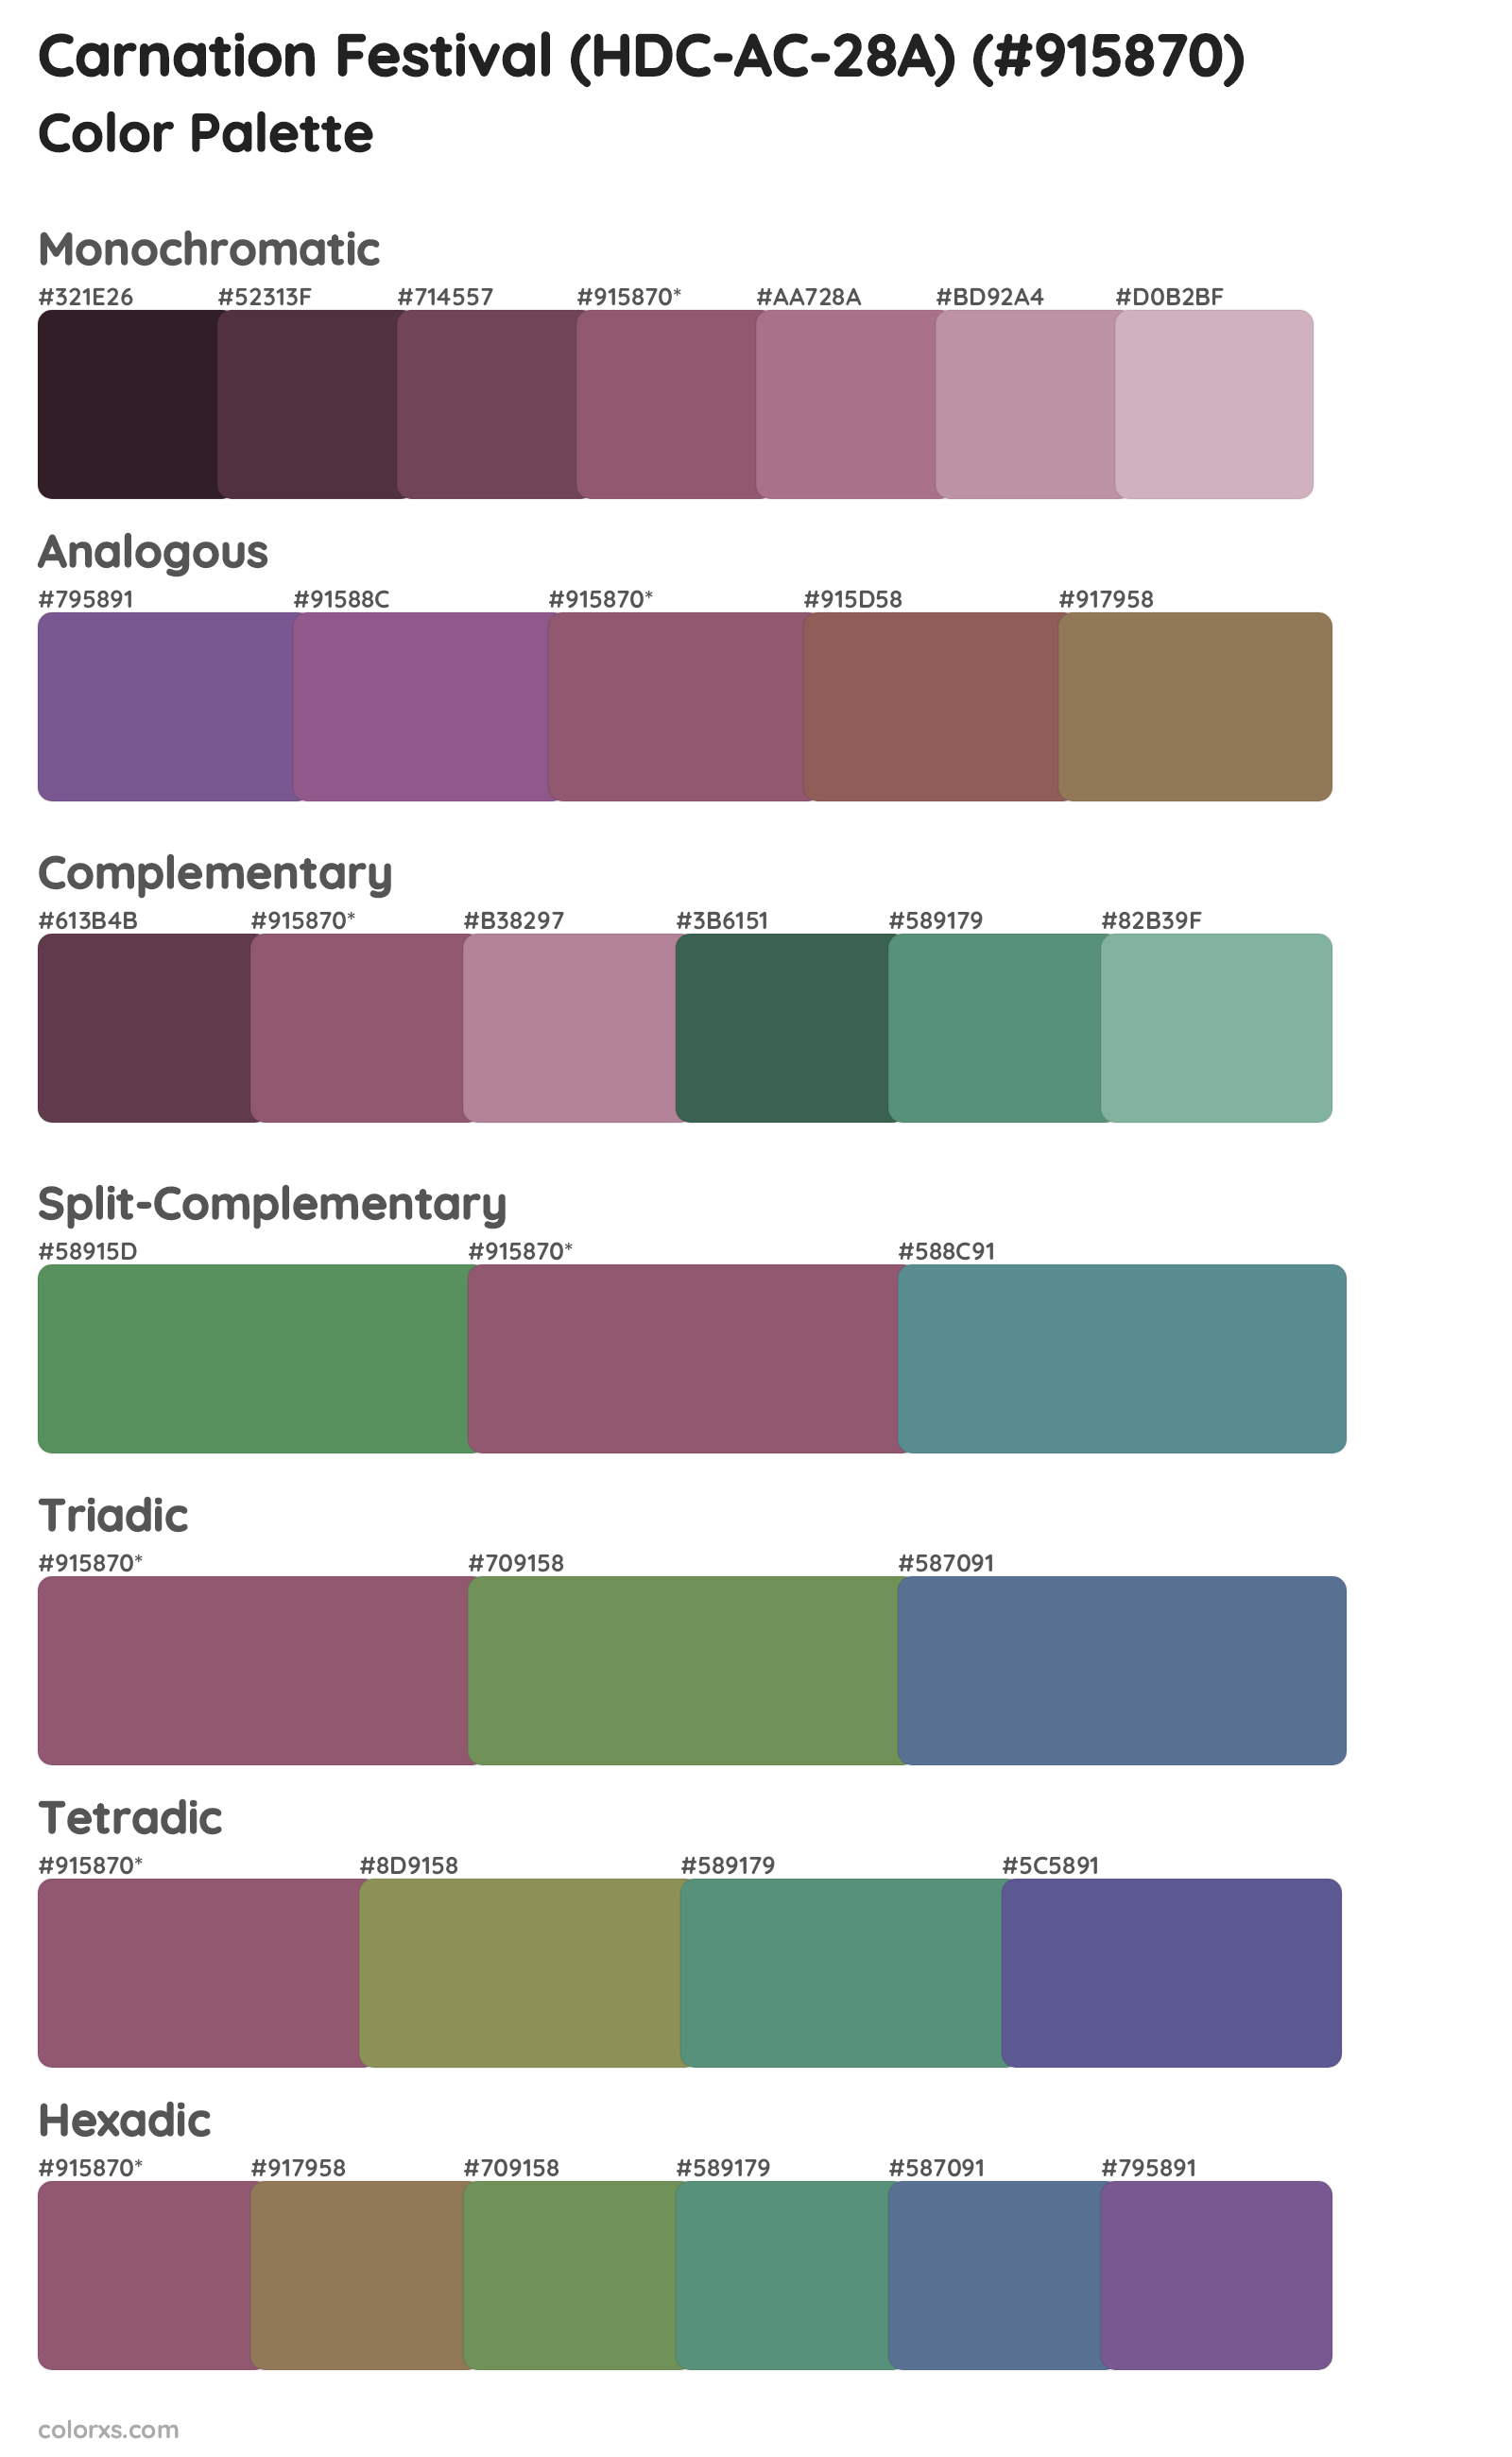 Carnation Festival (HDC-AC-28A) Color Scheme Palettes